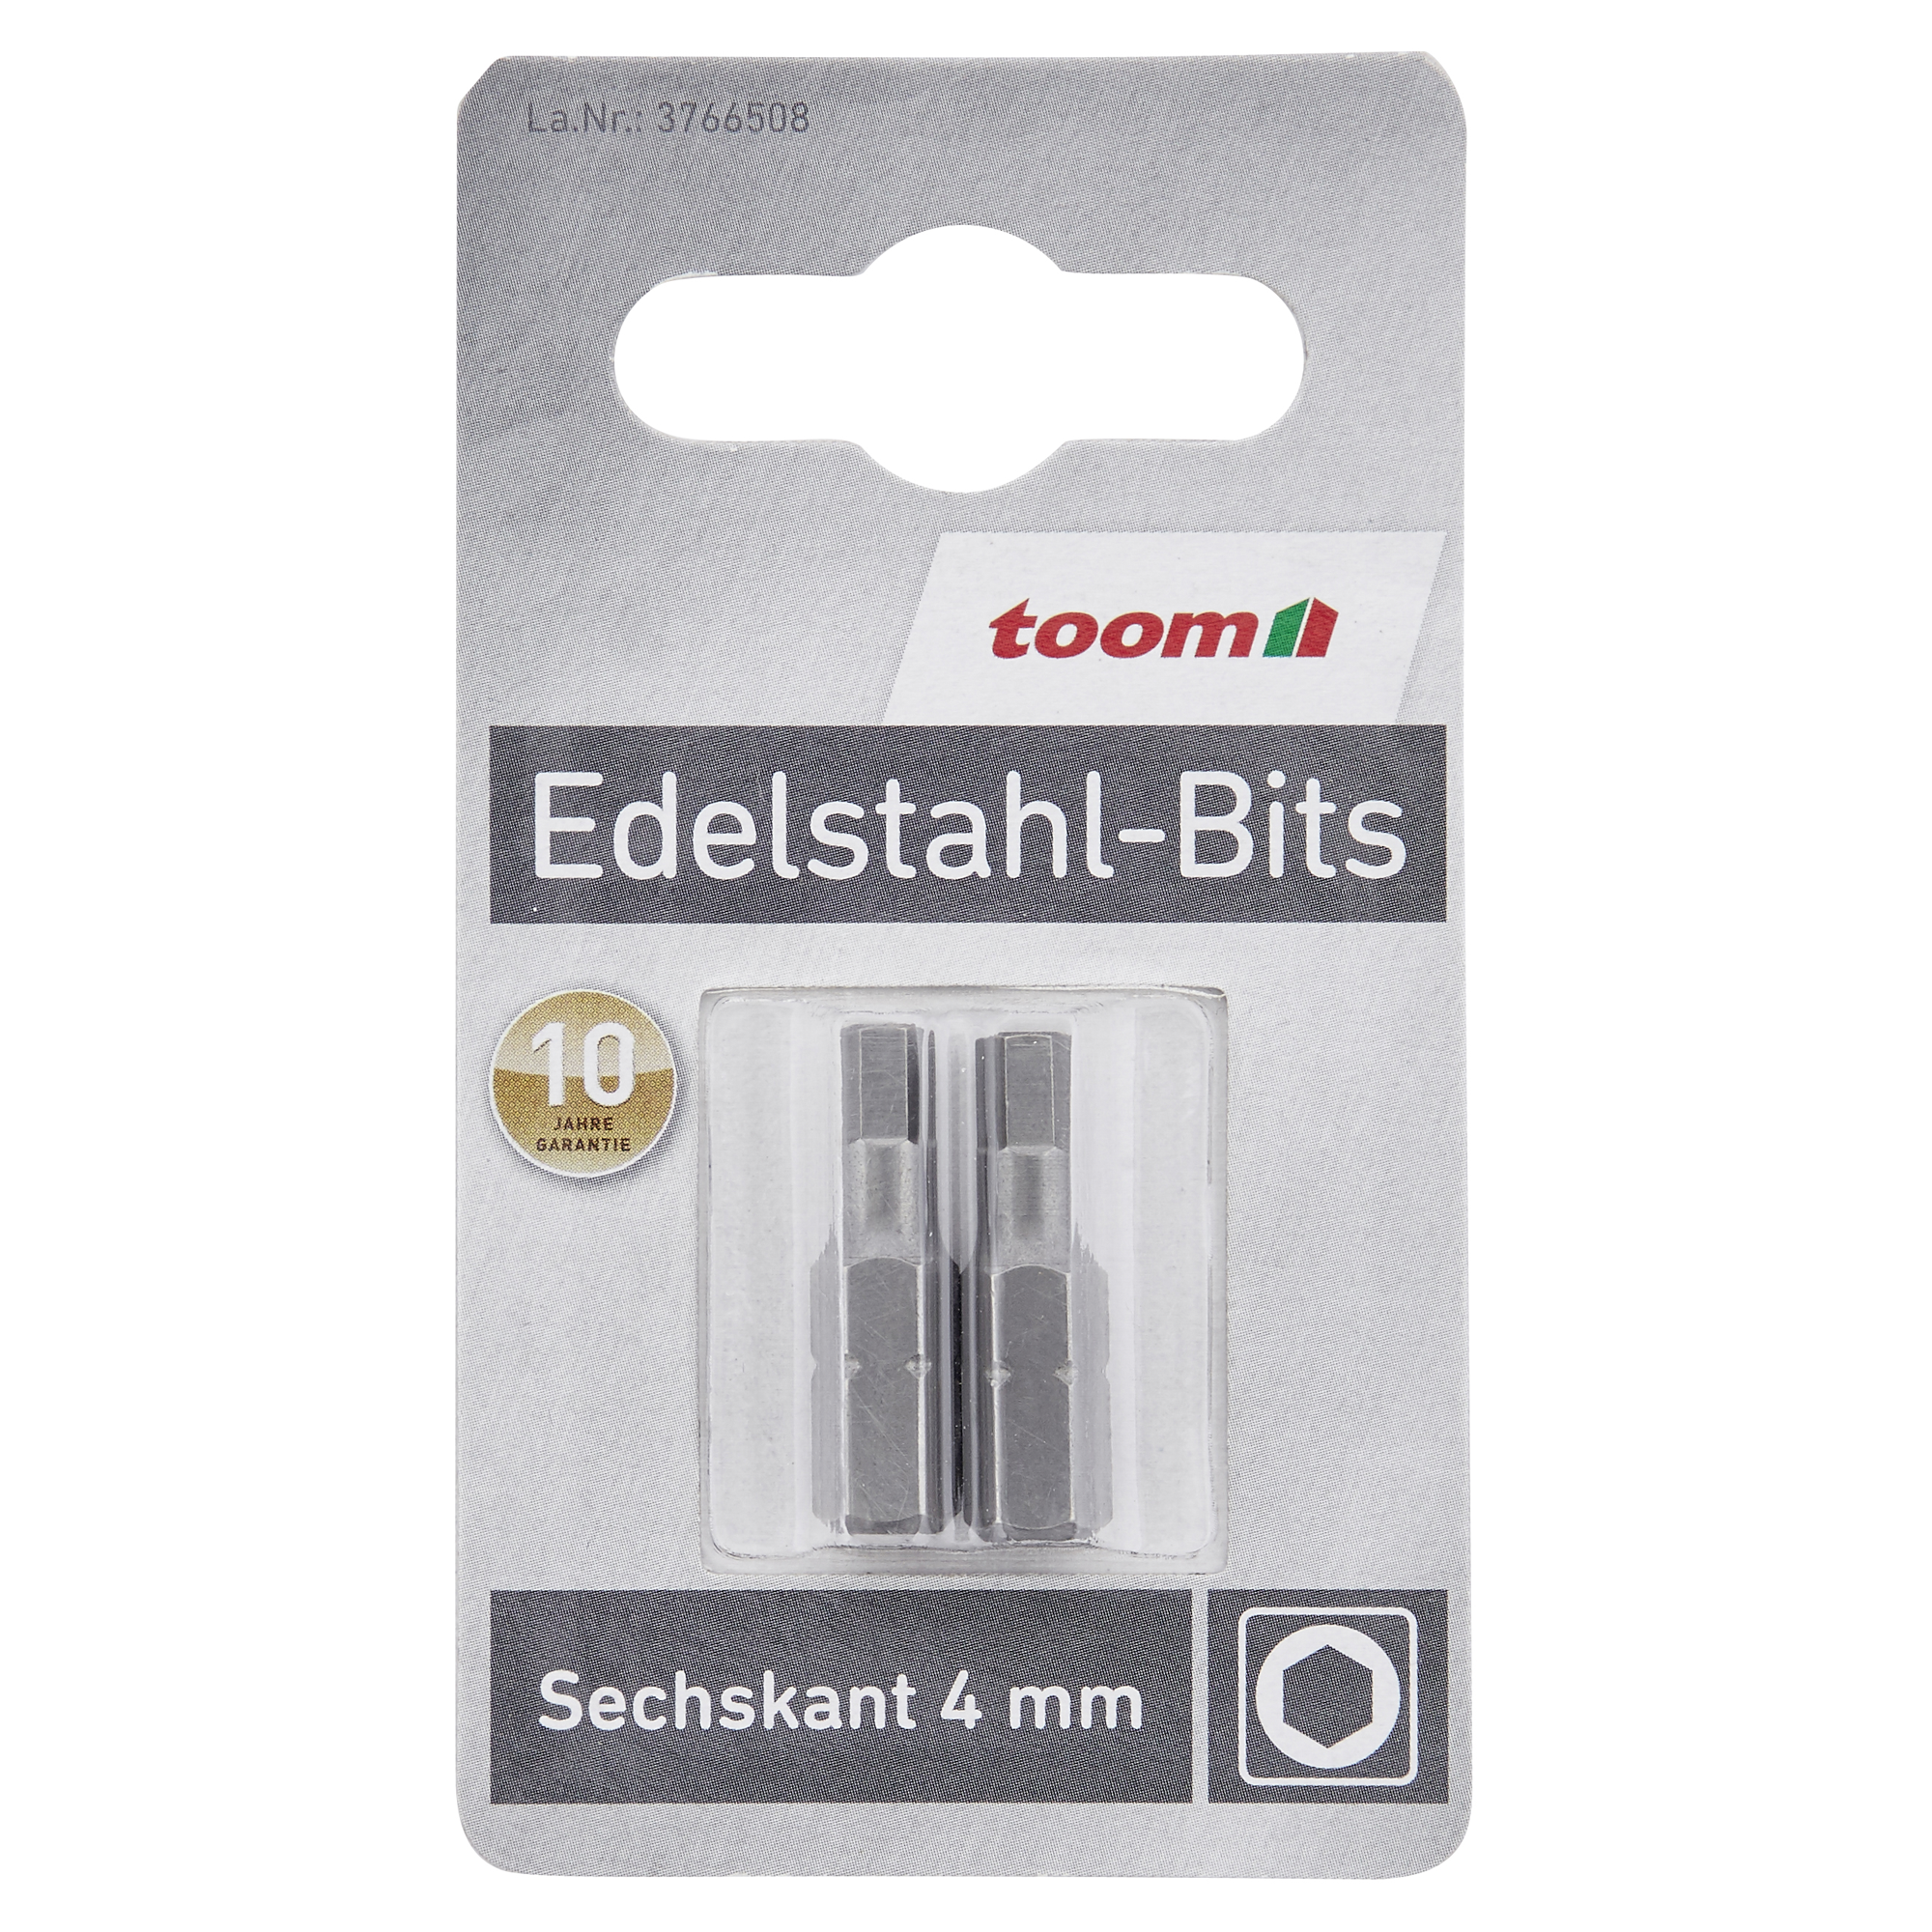 Edelstahl-Bits Sechskannt 4 x 25 mm 2 Stück + product picture